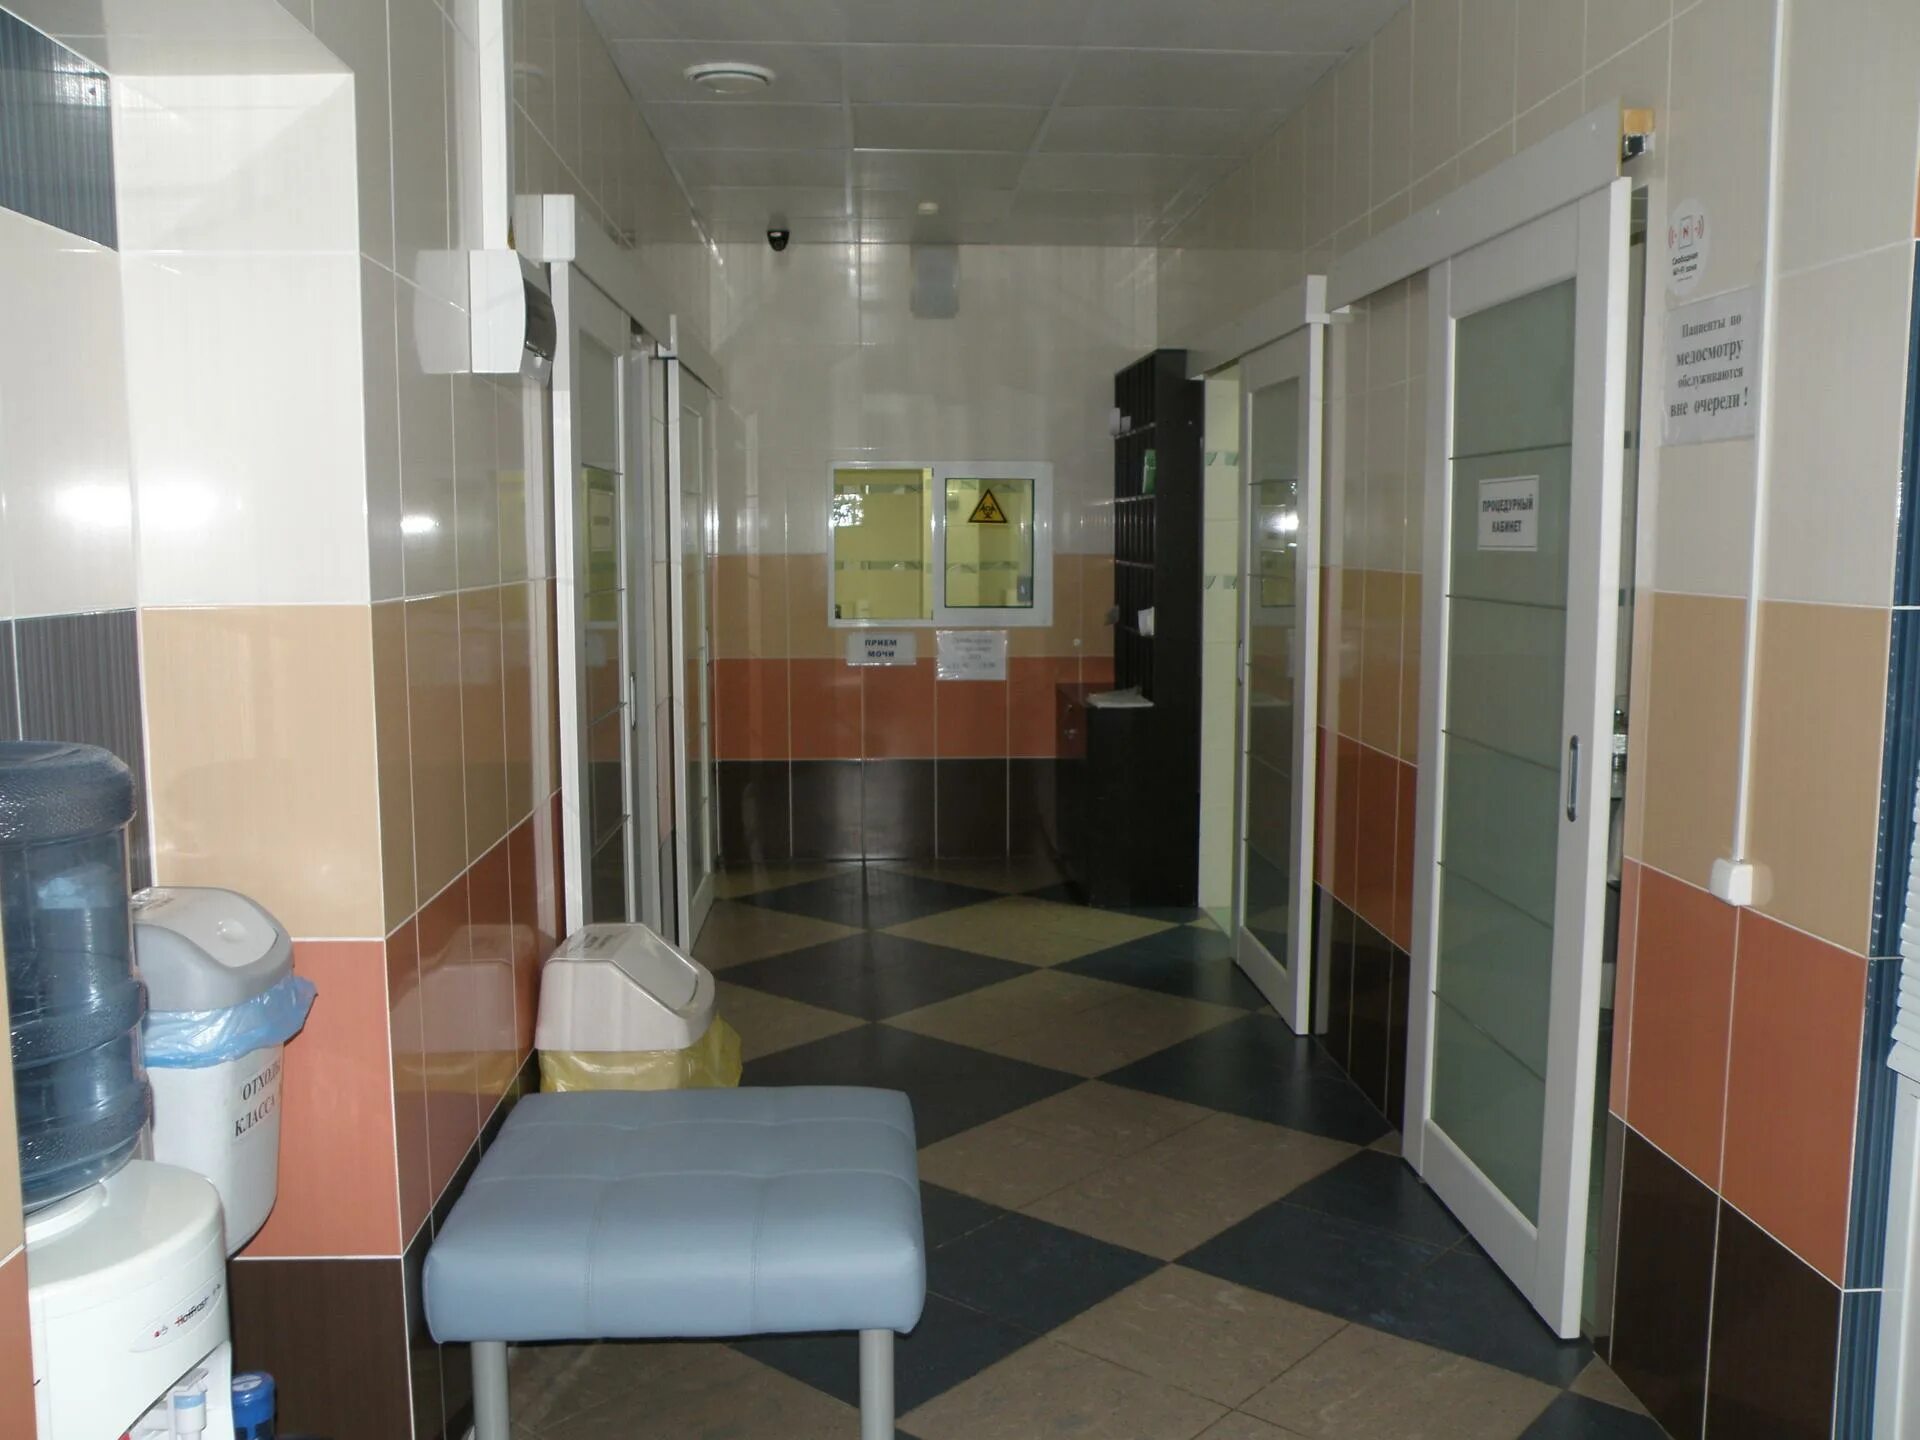 Островского 95 центр здоровья. Центр здоровья Рязань. Островского 95 Рязань центр здоровья. Островского 95 центр здоровья что рядом.